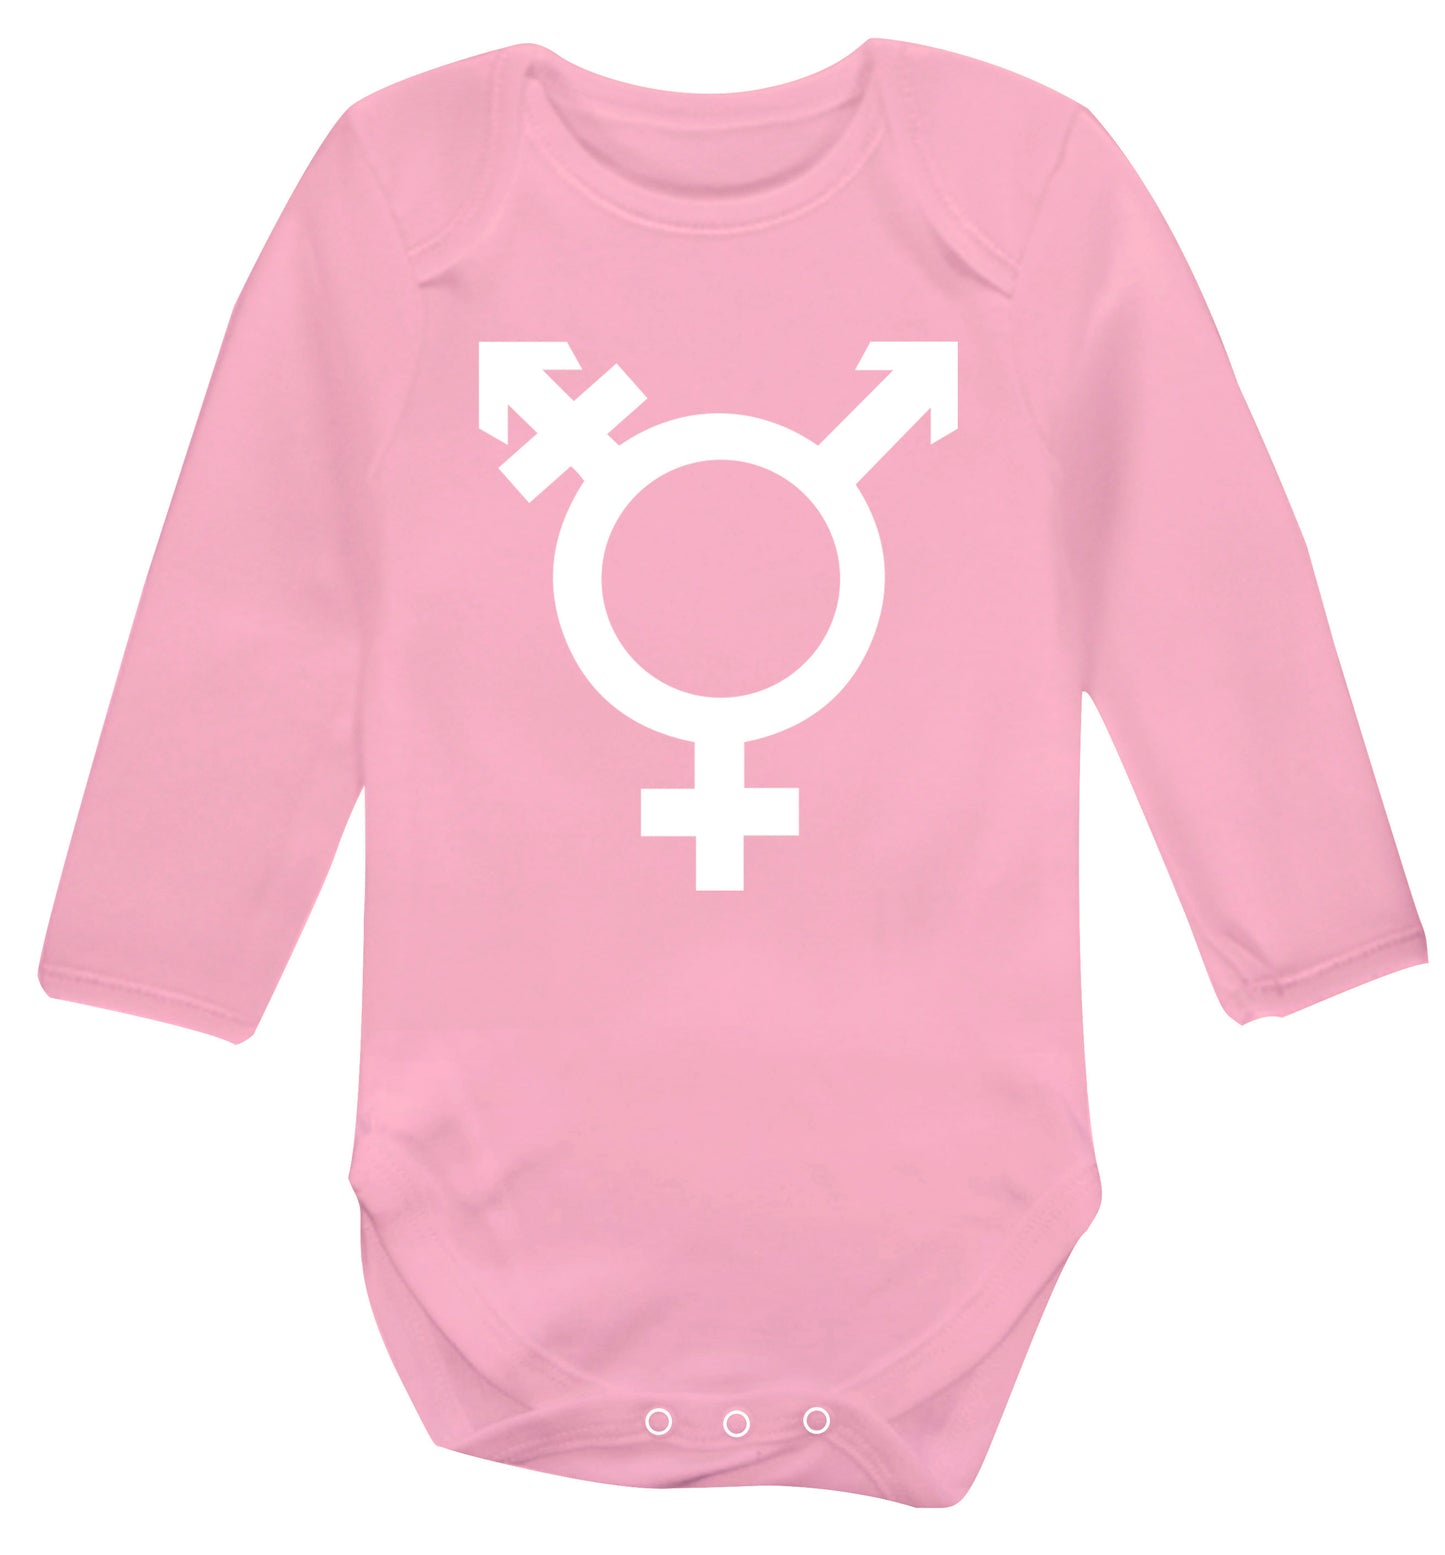 Gender neutral symbol large Baby Vest long sleeved pale pink 6-12 months